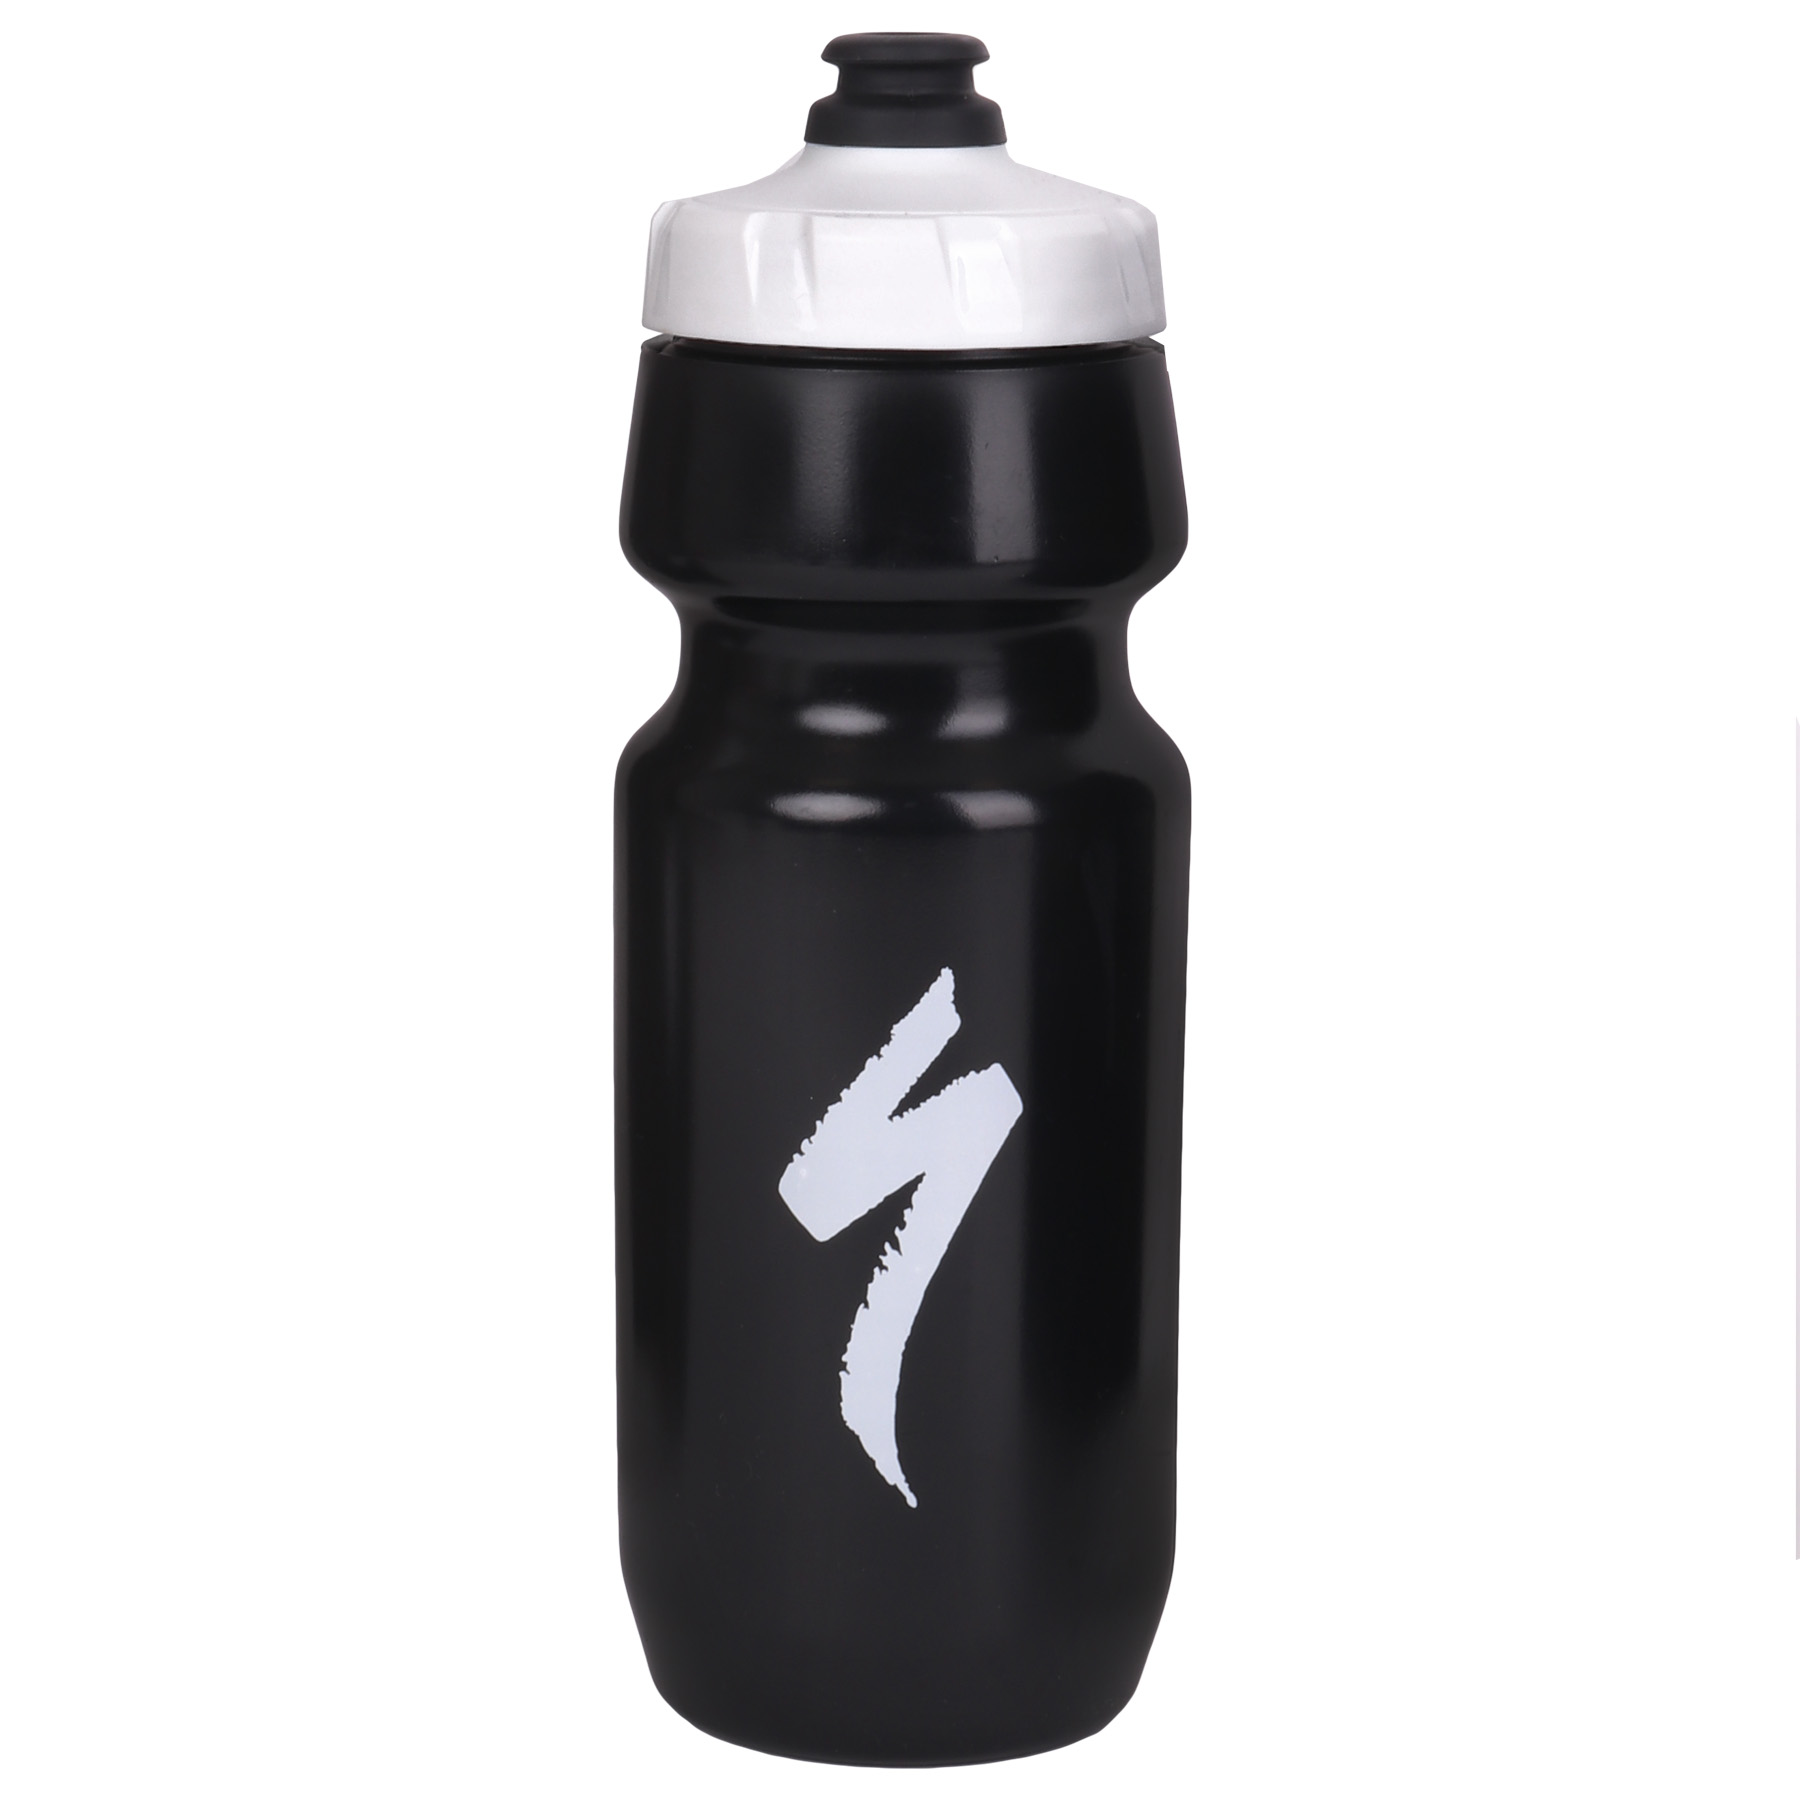 Produktbild von Specialized Big Mouth Trinkflasche 700ml - Black/White S-Logo